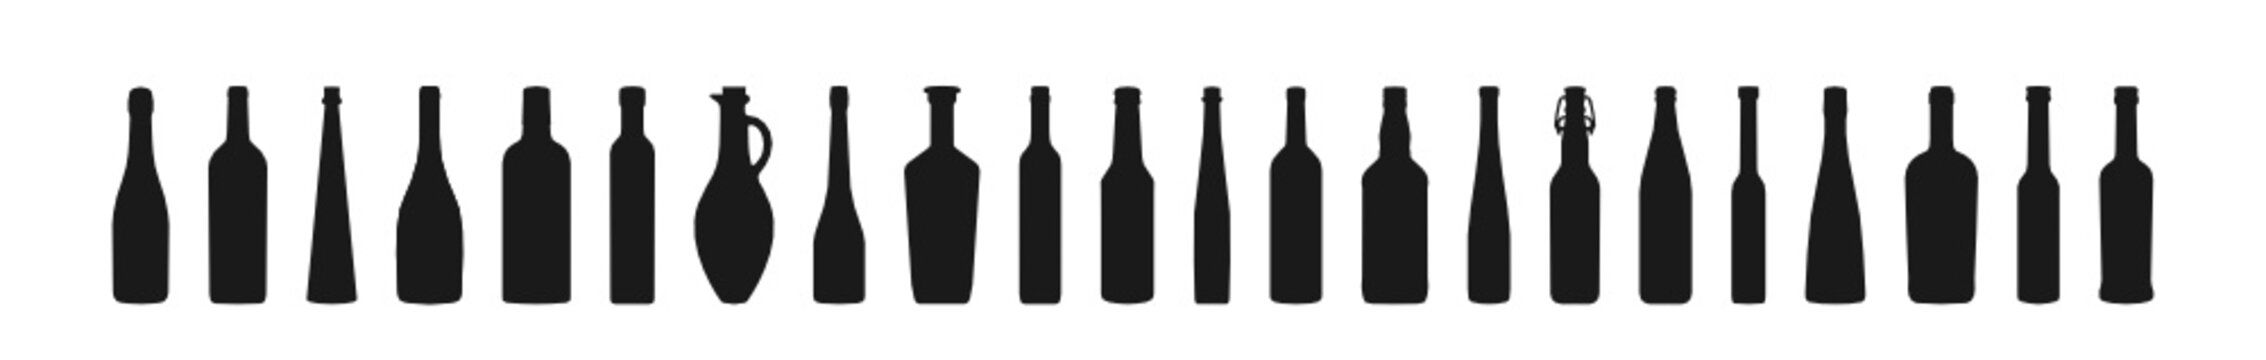 22 Flaschen Icons